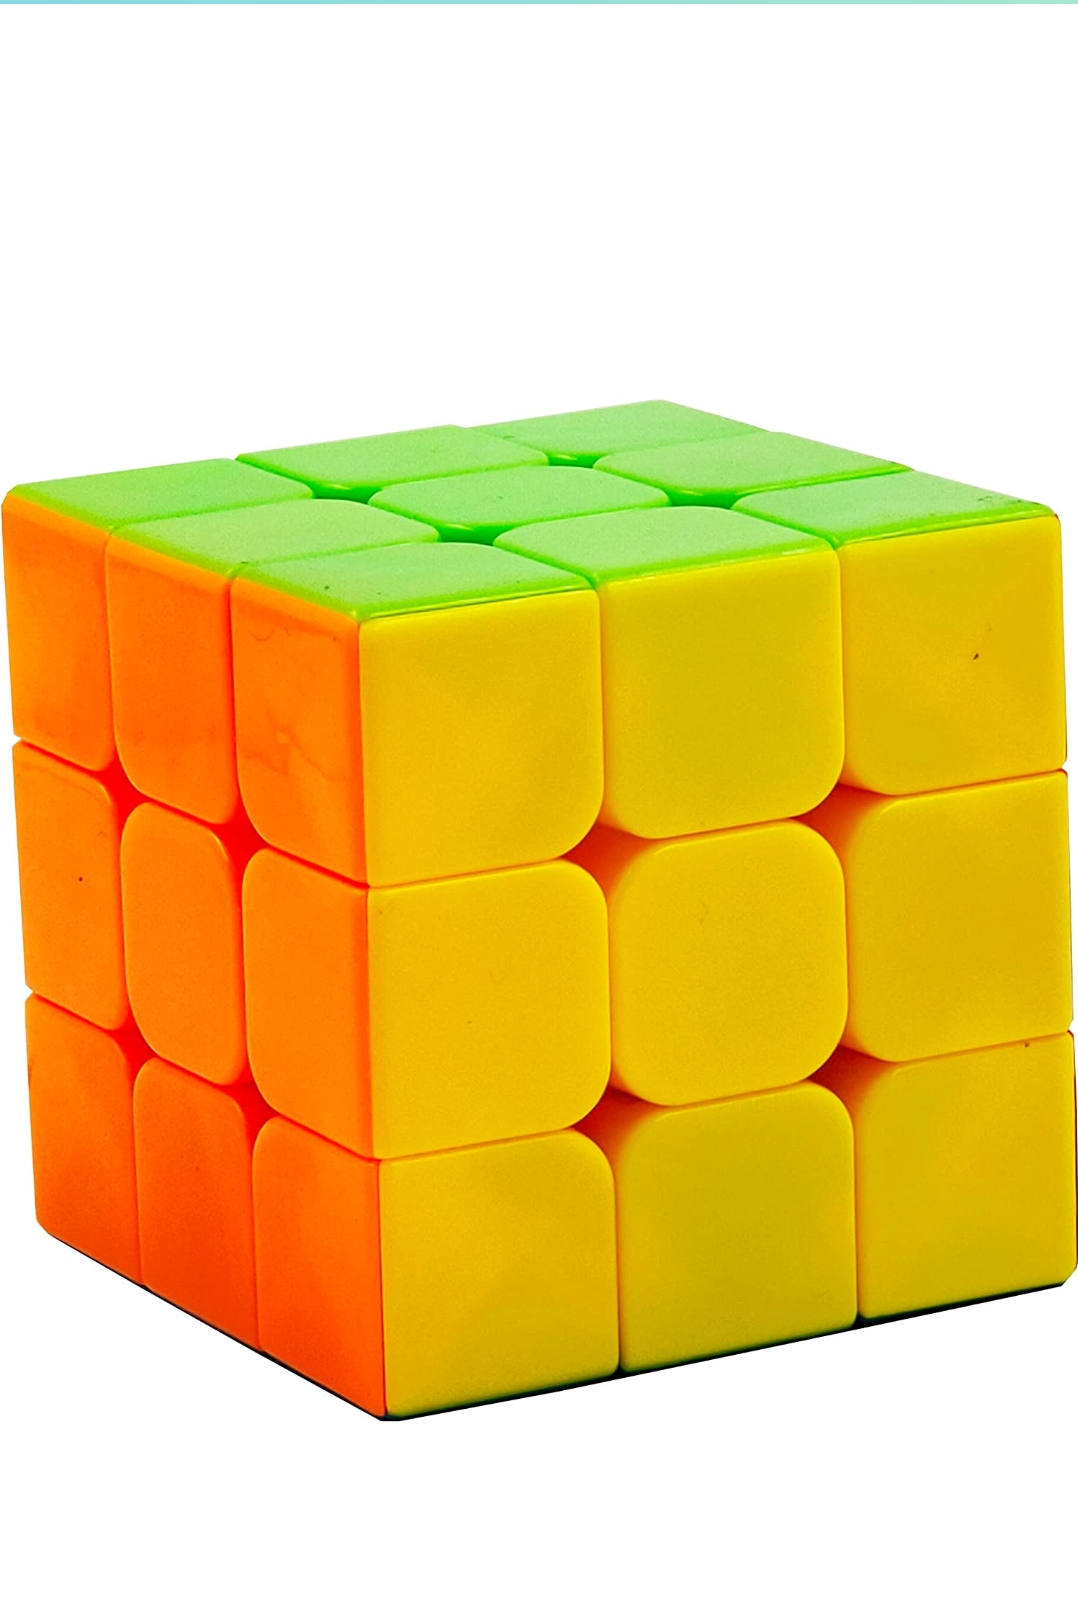 Rubeq cube